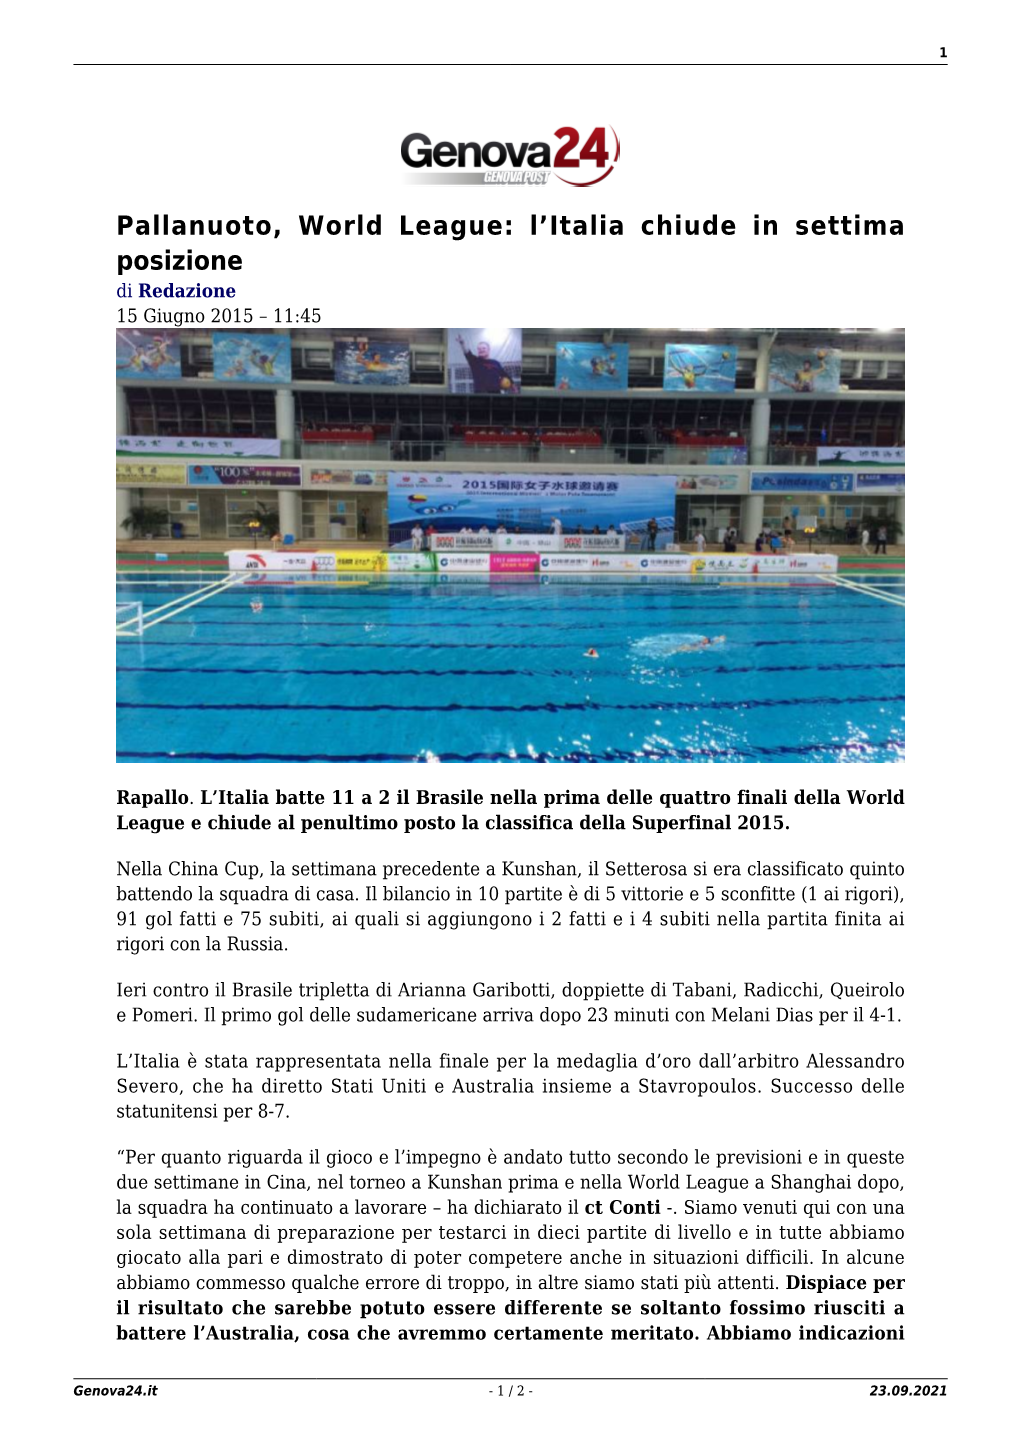 Pallanuoto, World League: L’Italia Chiude in Settima Posizione Di Redazione 15 Giugno 2015 – 11:45